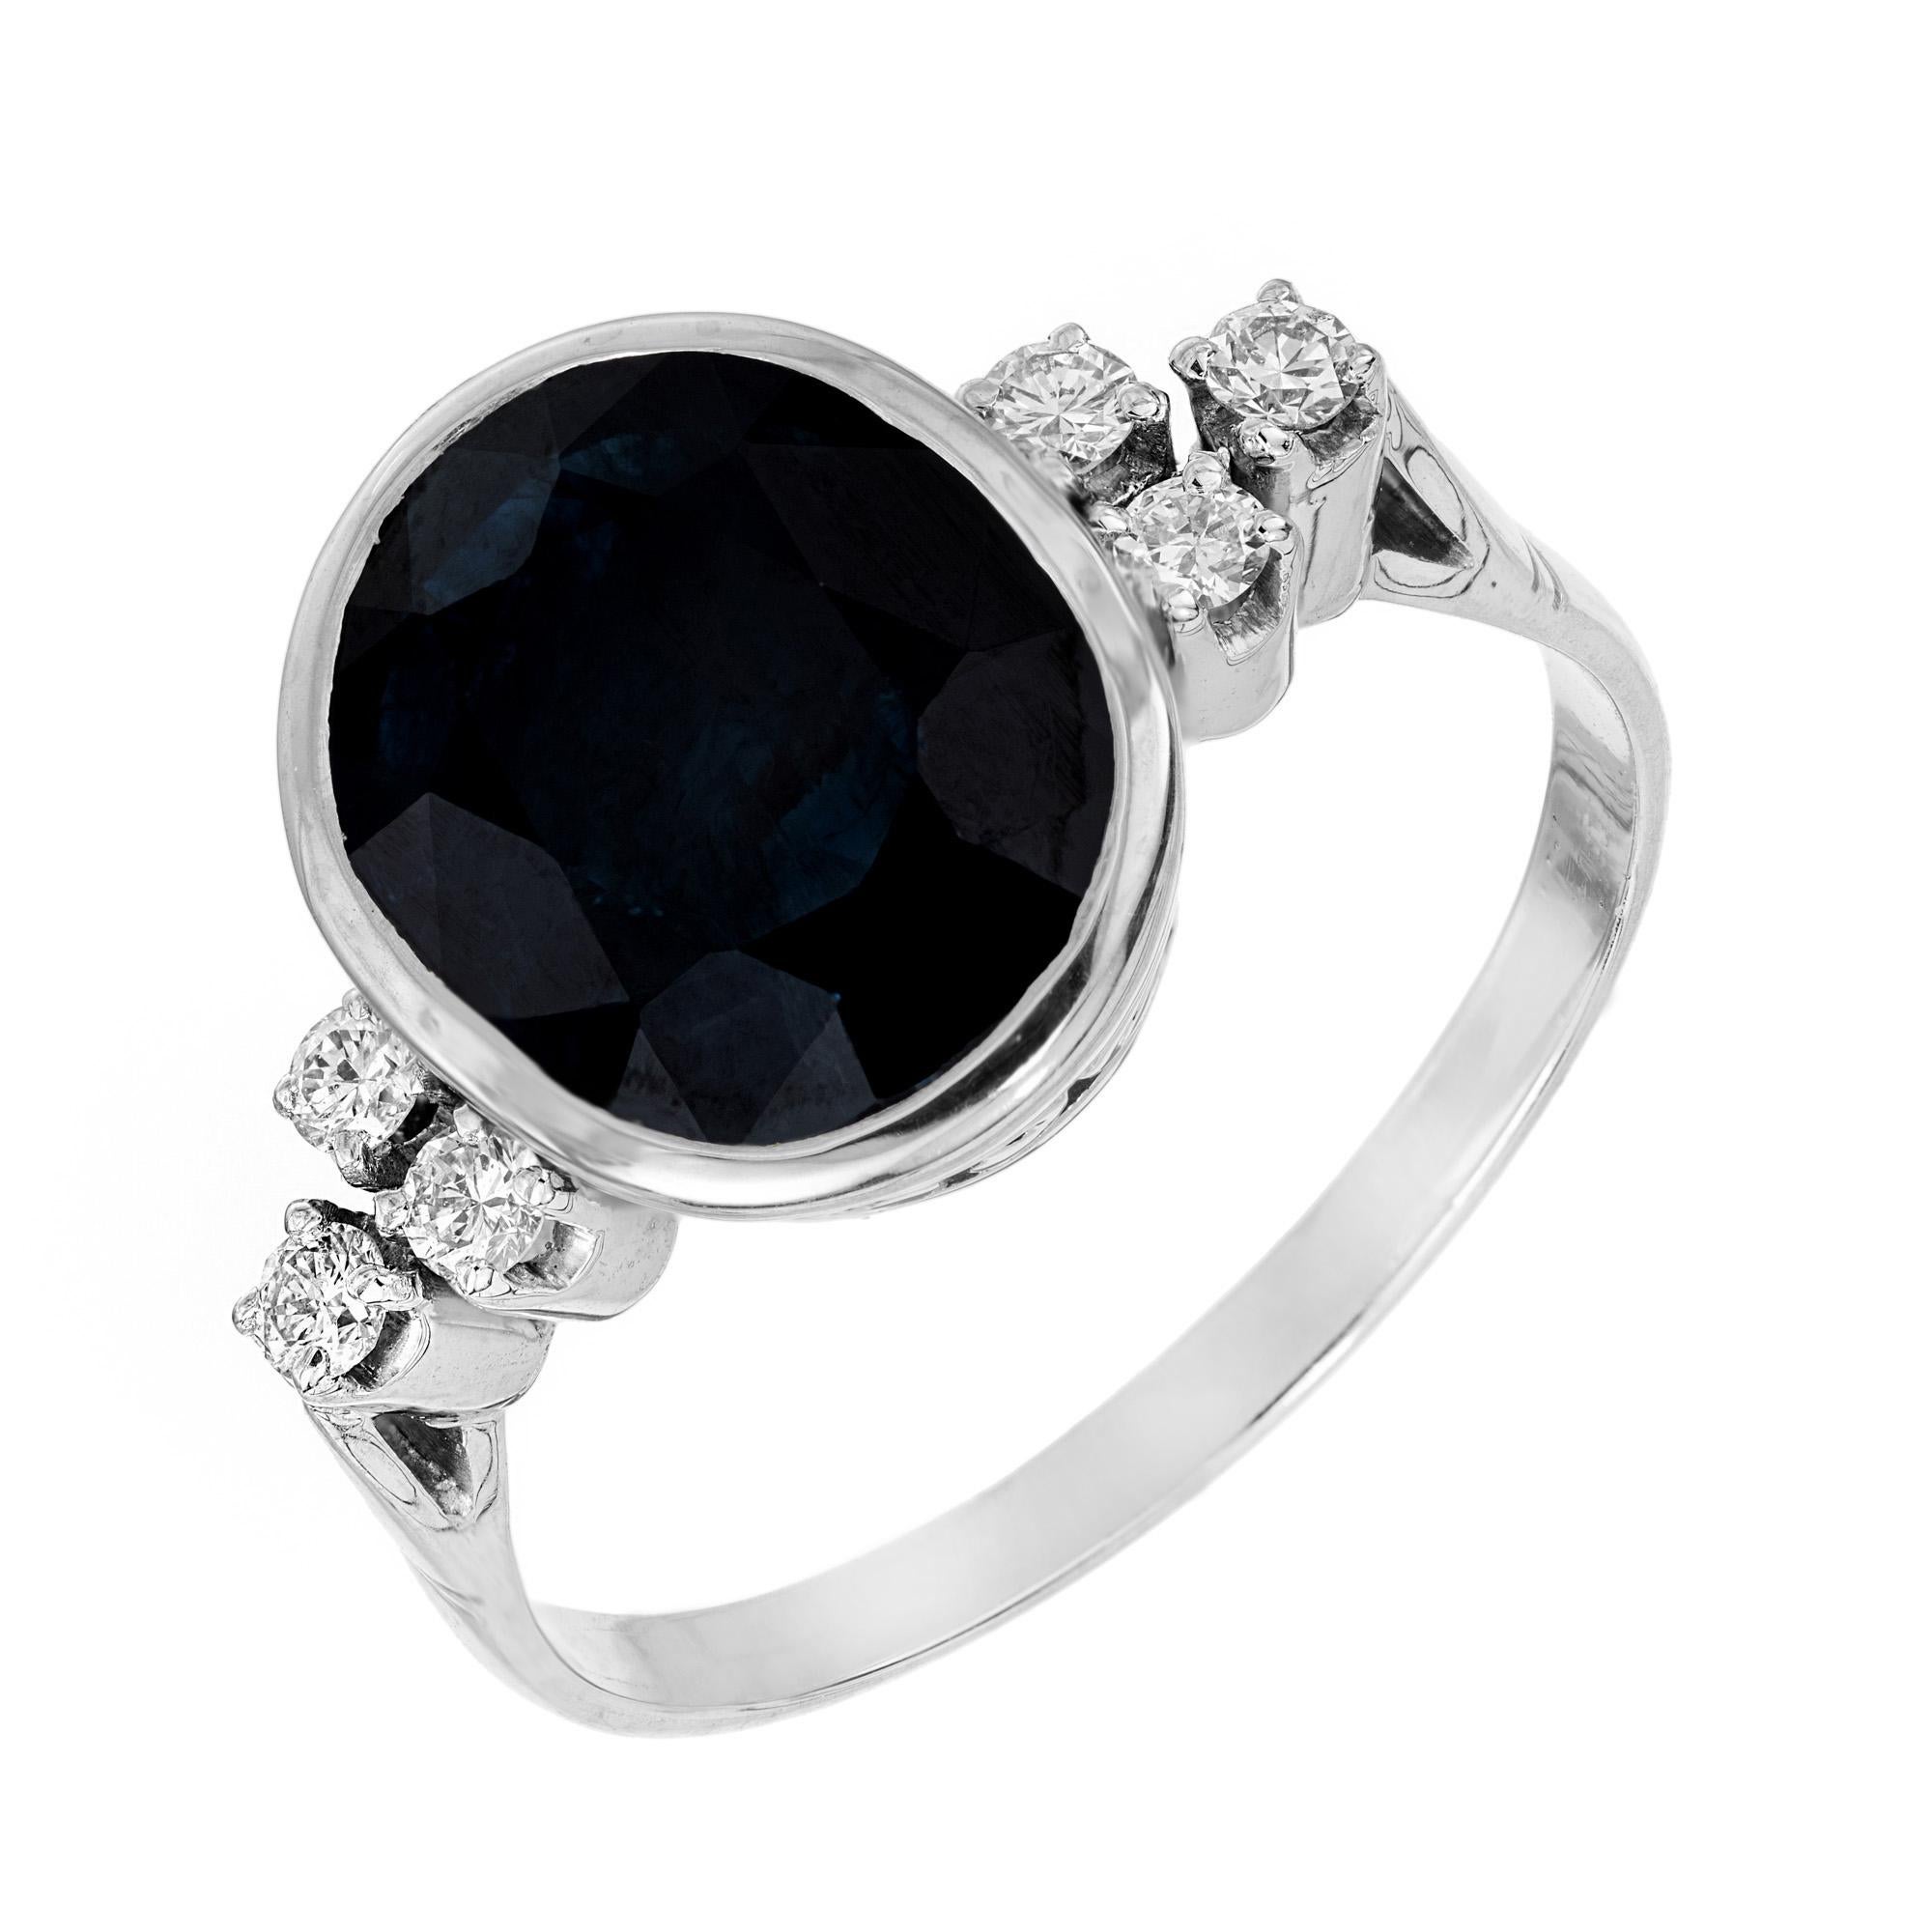 Wunderschöner ovaler 5,51 Karat zertifizierter natürlicher tiefblauer Saphir und Diamant-Verlobungsring. Montiert in der originalen Platinfassung aus den 1950er Jahren mit einer filigranen Krone. Der Saphir wird von 3 runden Diamanten im